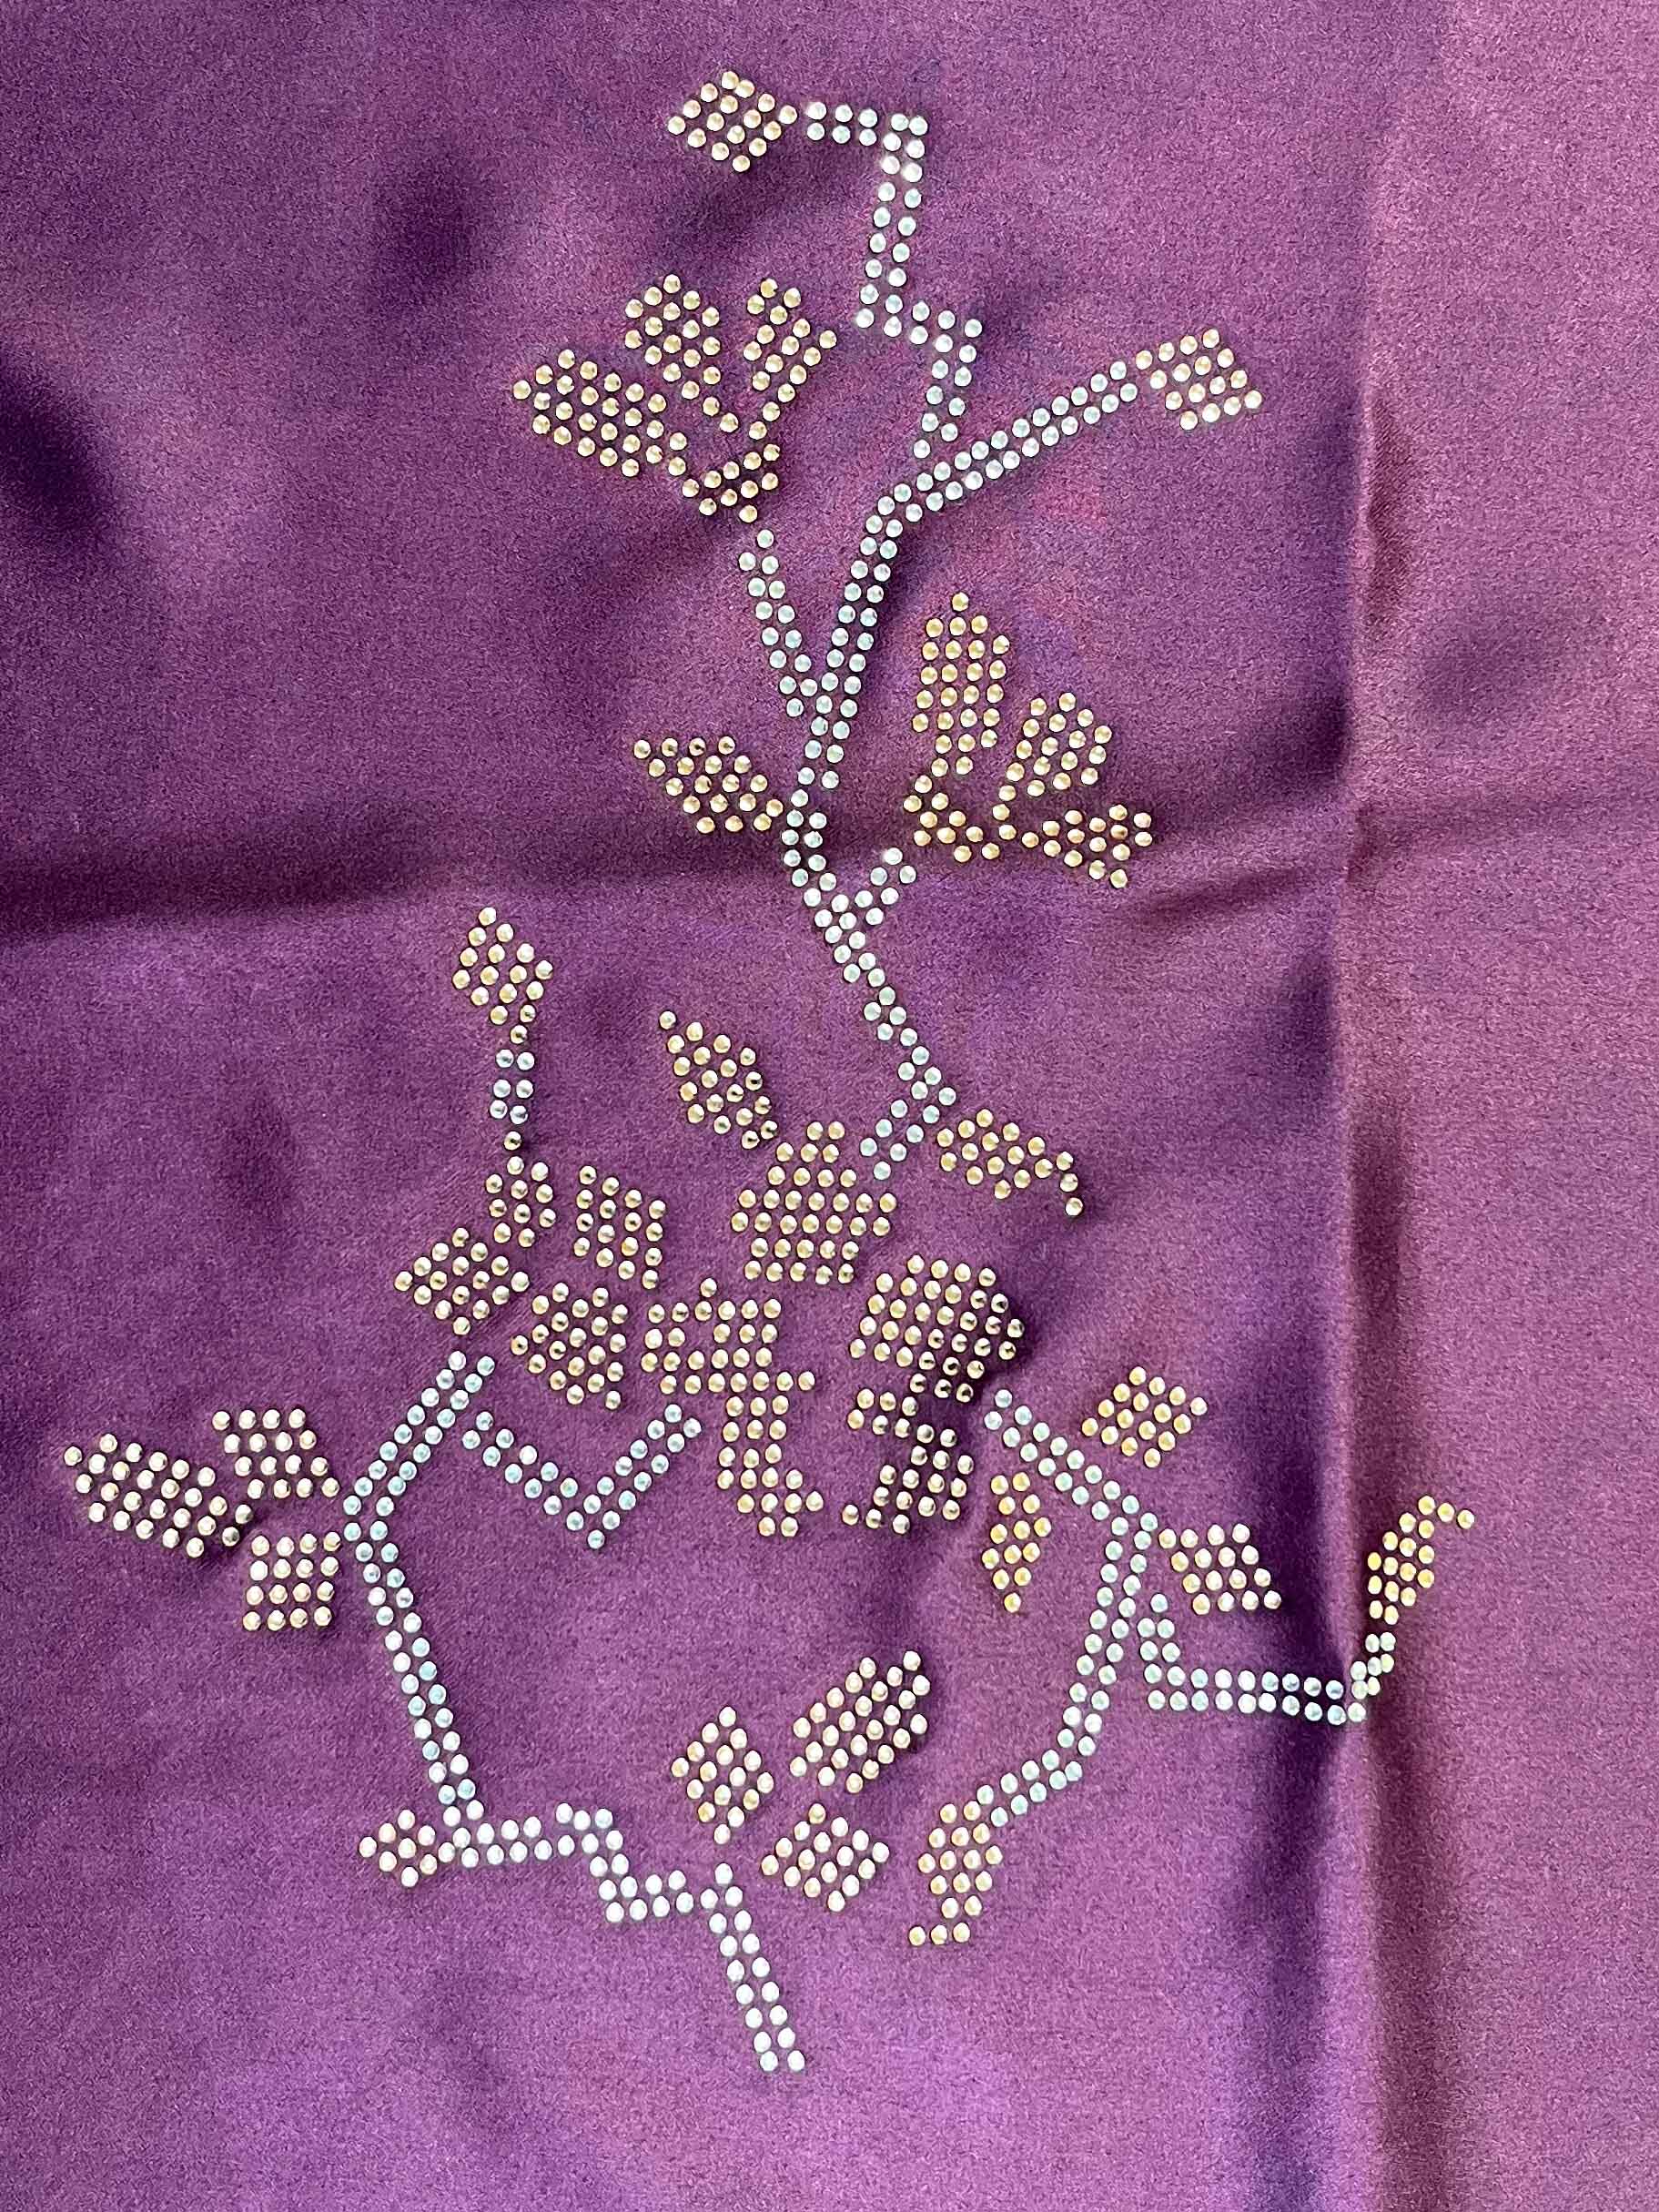 Banarasee Handwoven Plain Tissue Silk Swarovski Work Saree With Silk Blouse-Violet